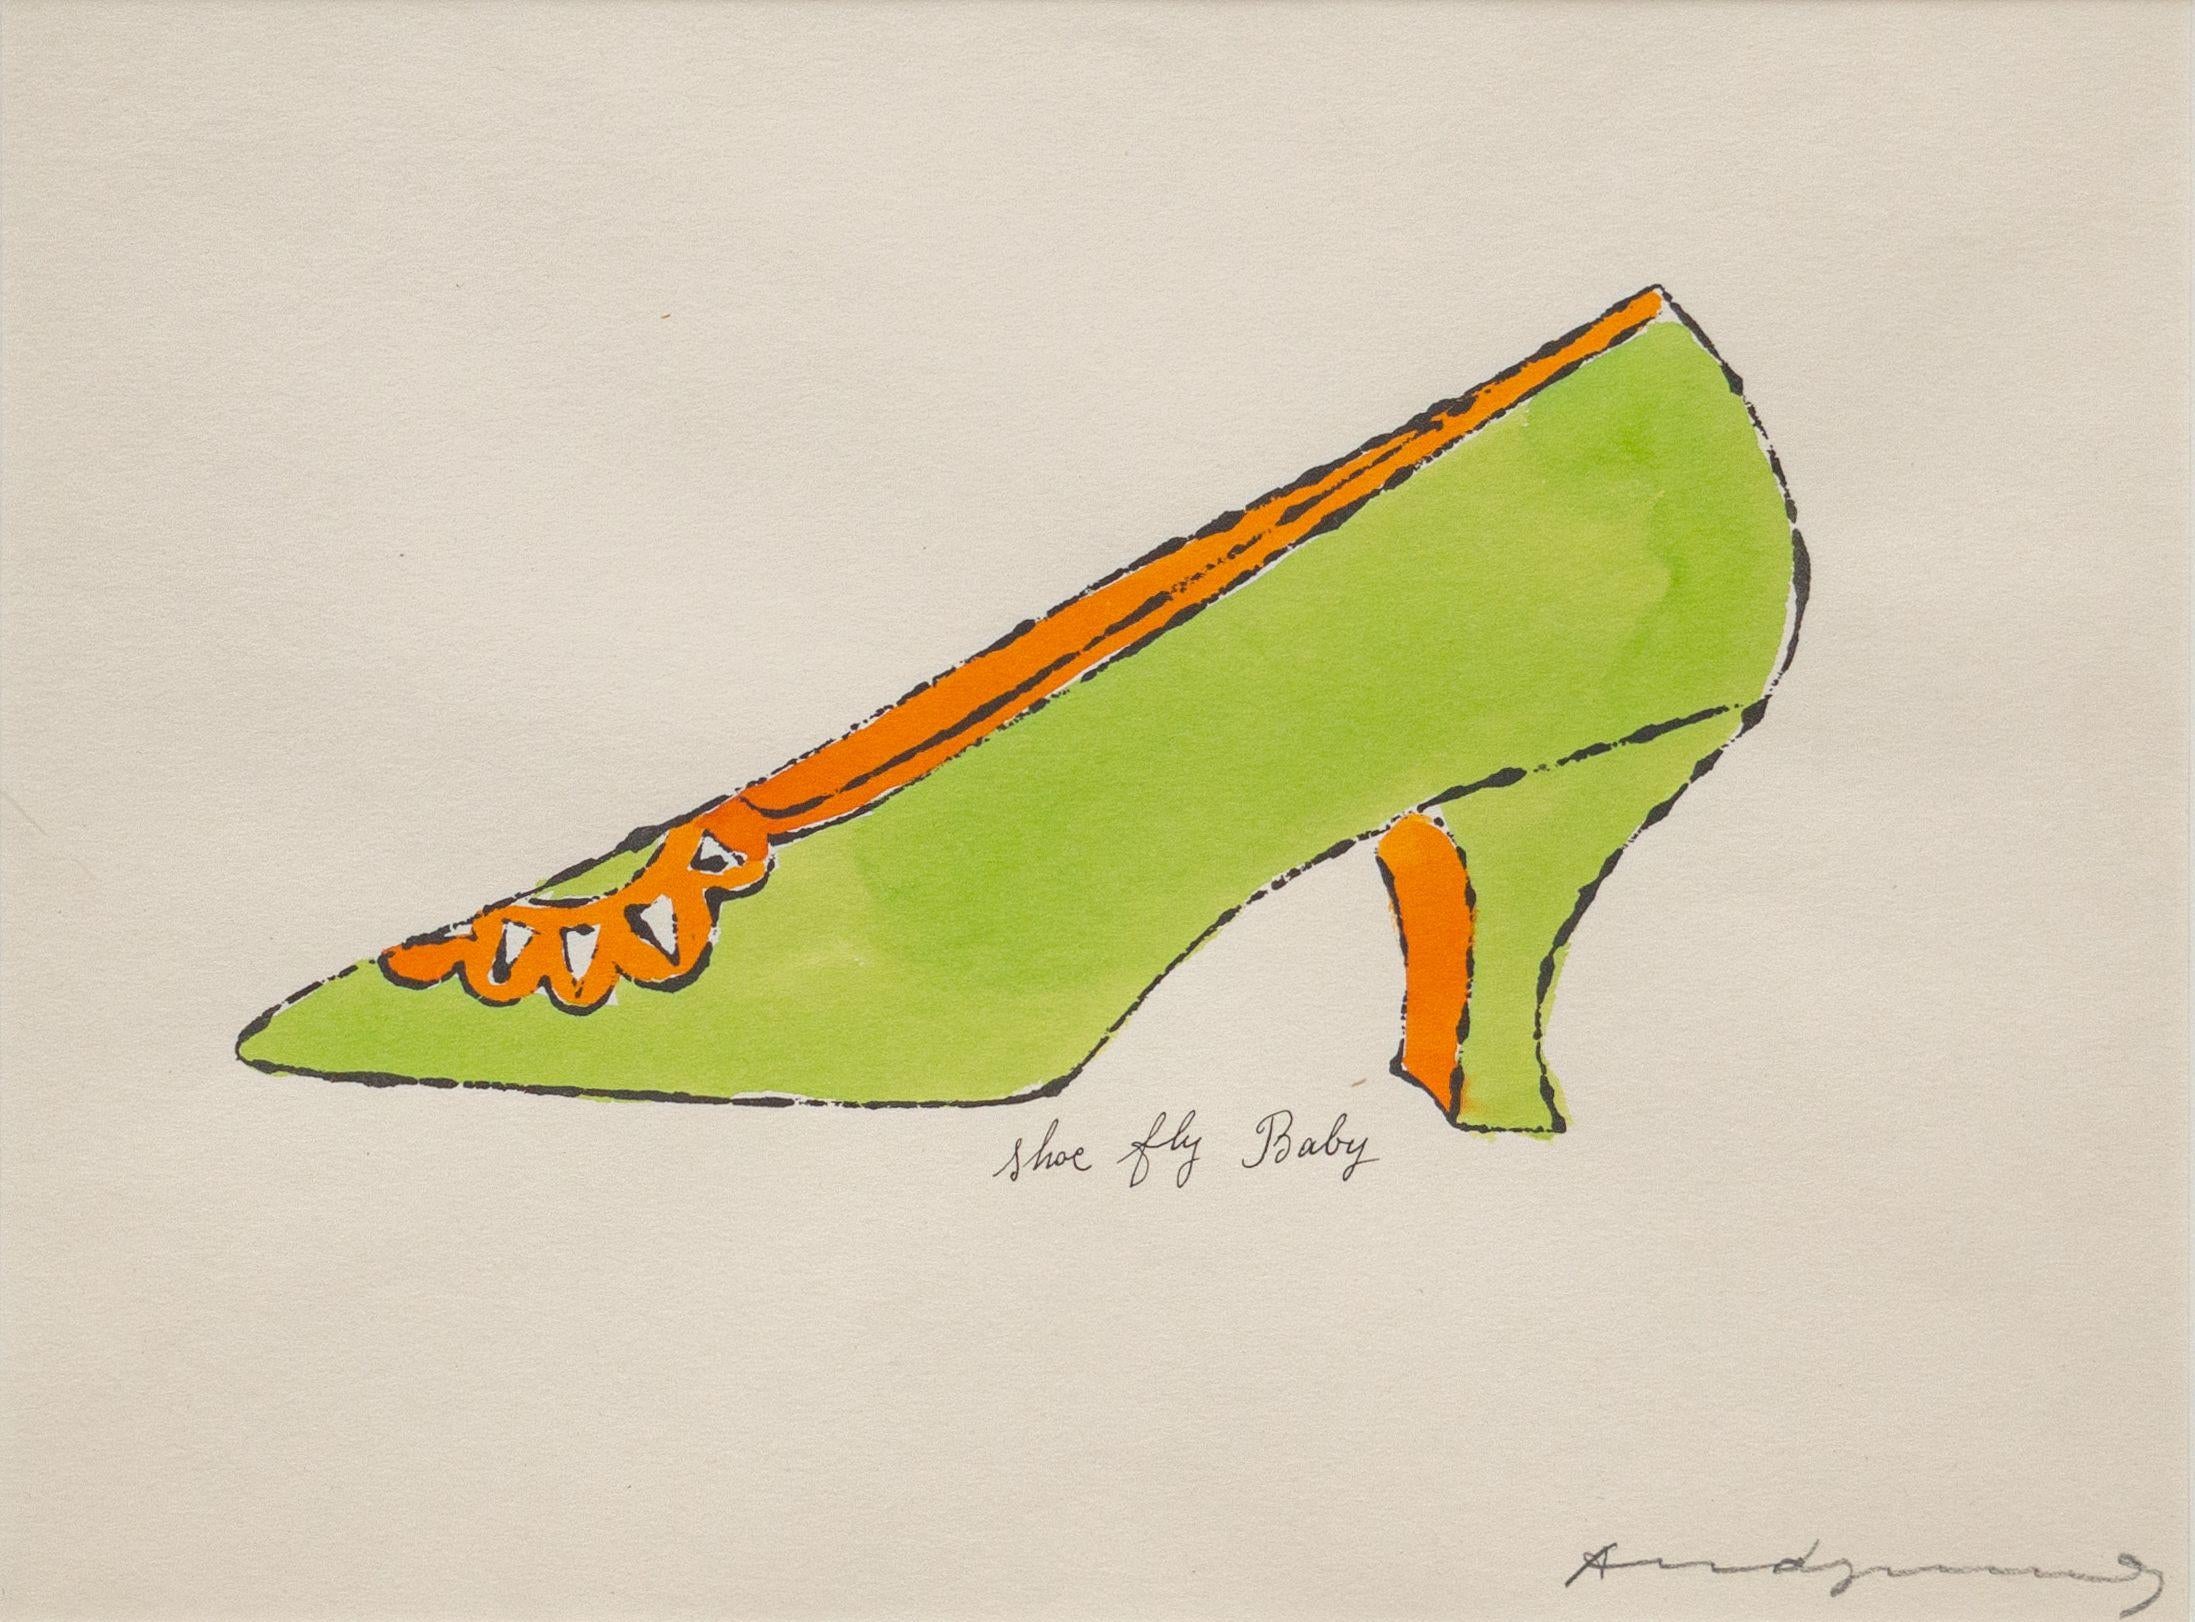 ANDY WARHOL (1928-1987)

L'œuvre d'Andy Warhol "Shoe Fly Baby", tirée de A La Recherche du Shoe Perdu, est une lithographie offset et une aquarelle sur papier conçues en 1955. Elle est signée au crayon, avec toutes les marges, et mesure 9 3/4 x 13